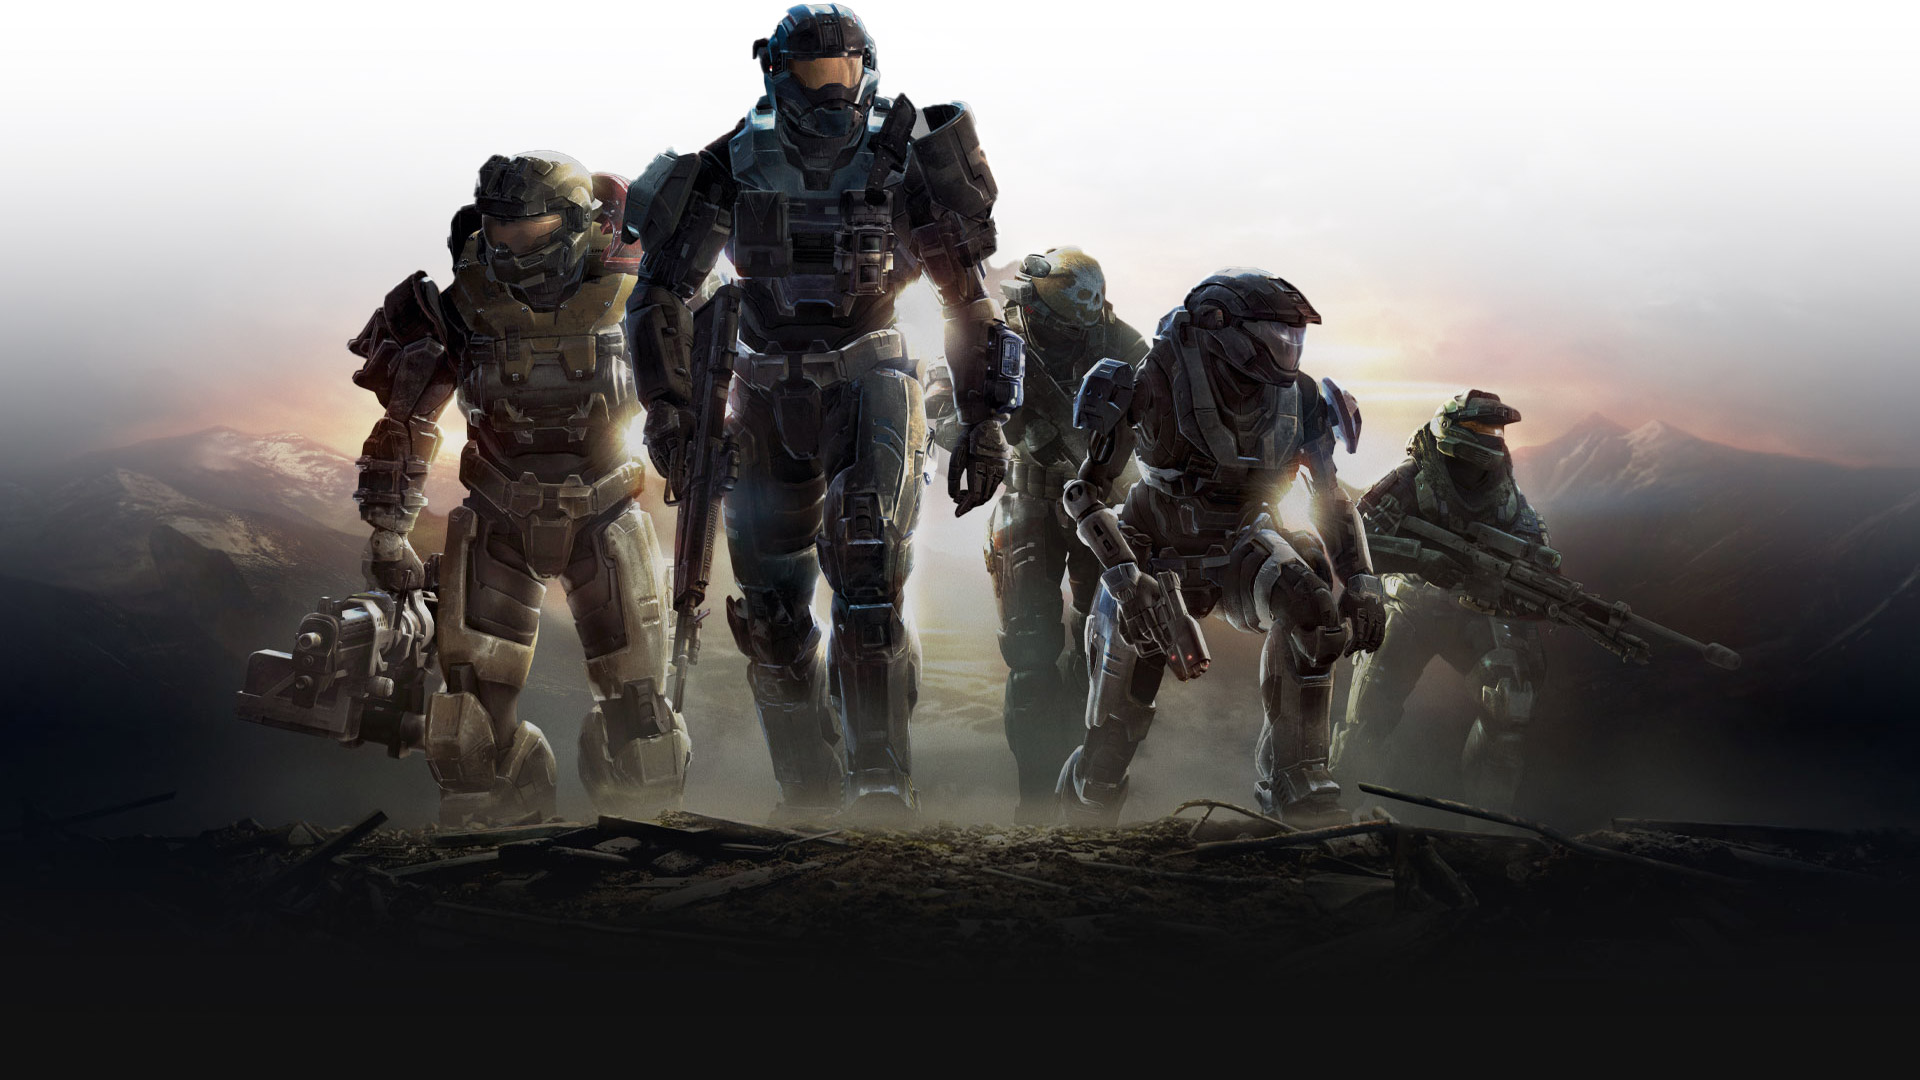 Spartanie z Halo Reach wchodzą na wzgórze z bronią w pogotowiu